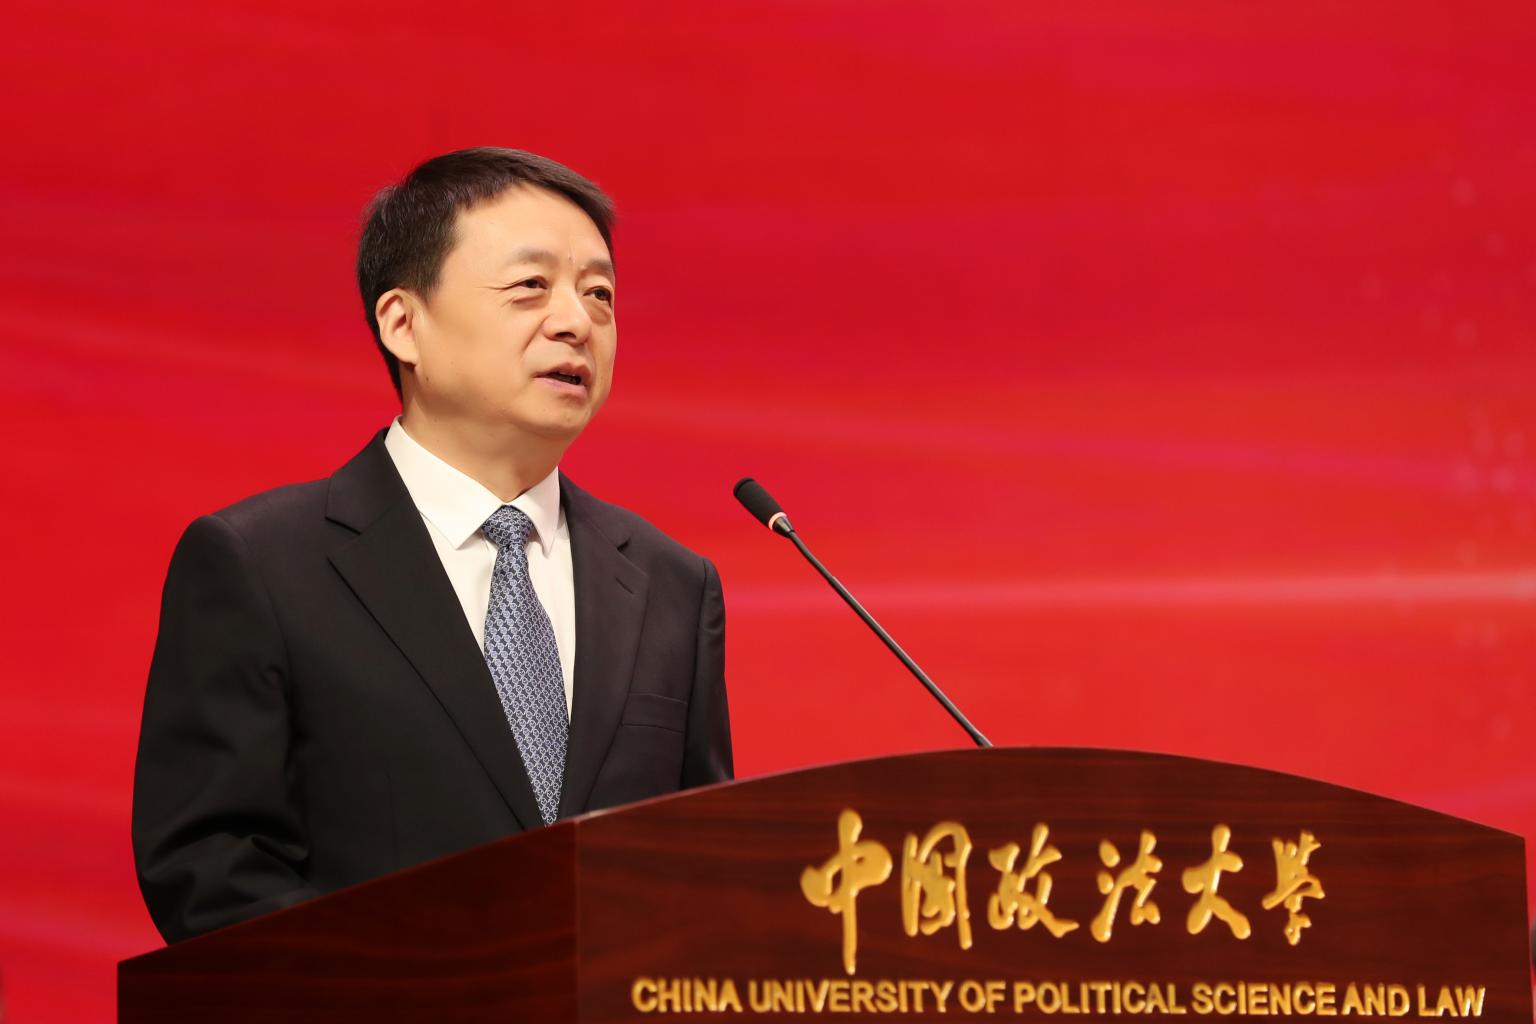 同心致远 向新而行 ——中国政法大学72周年校庆致辞